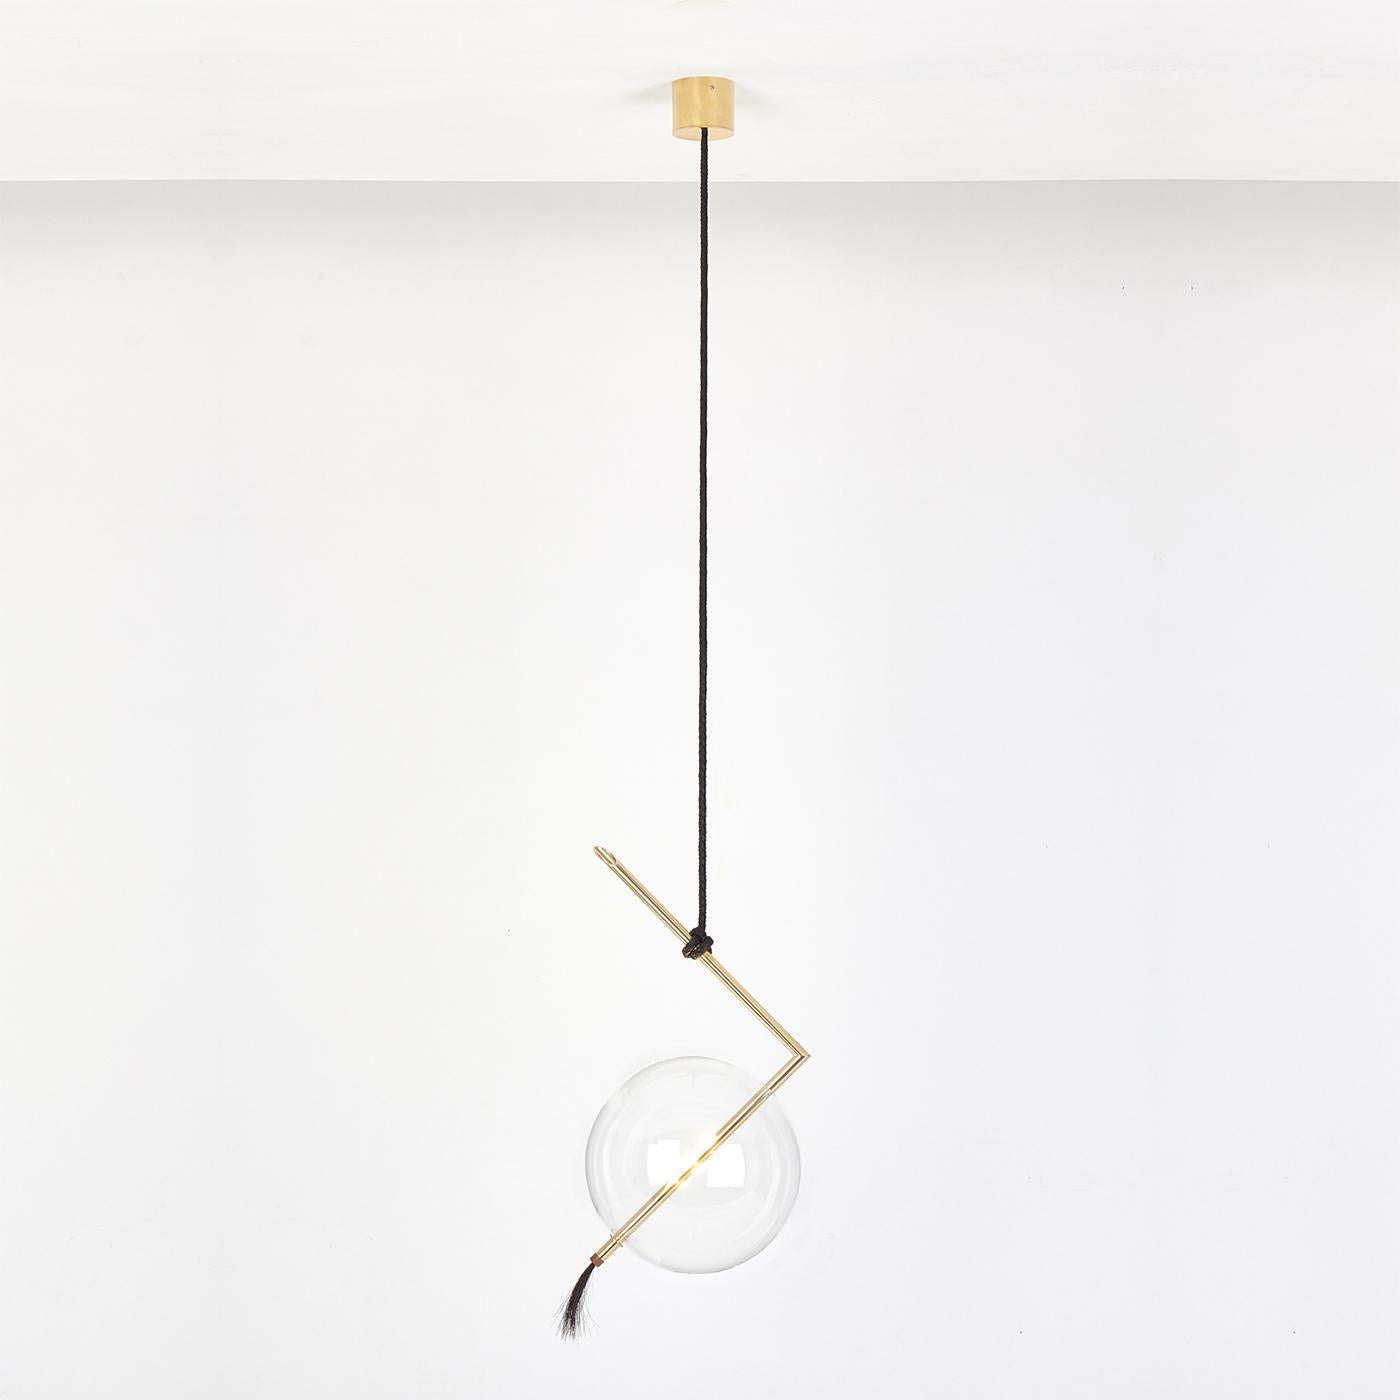 Disposée en plusieurs exemplaires à différentes hauteurs dans un salon ou une salle à manger minimaliste, cette suspension lumineuse raffinée est une pièce rayonnante et sculpturale. La silhouette non conventionnelle est faite d'un tube en laiton